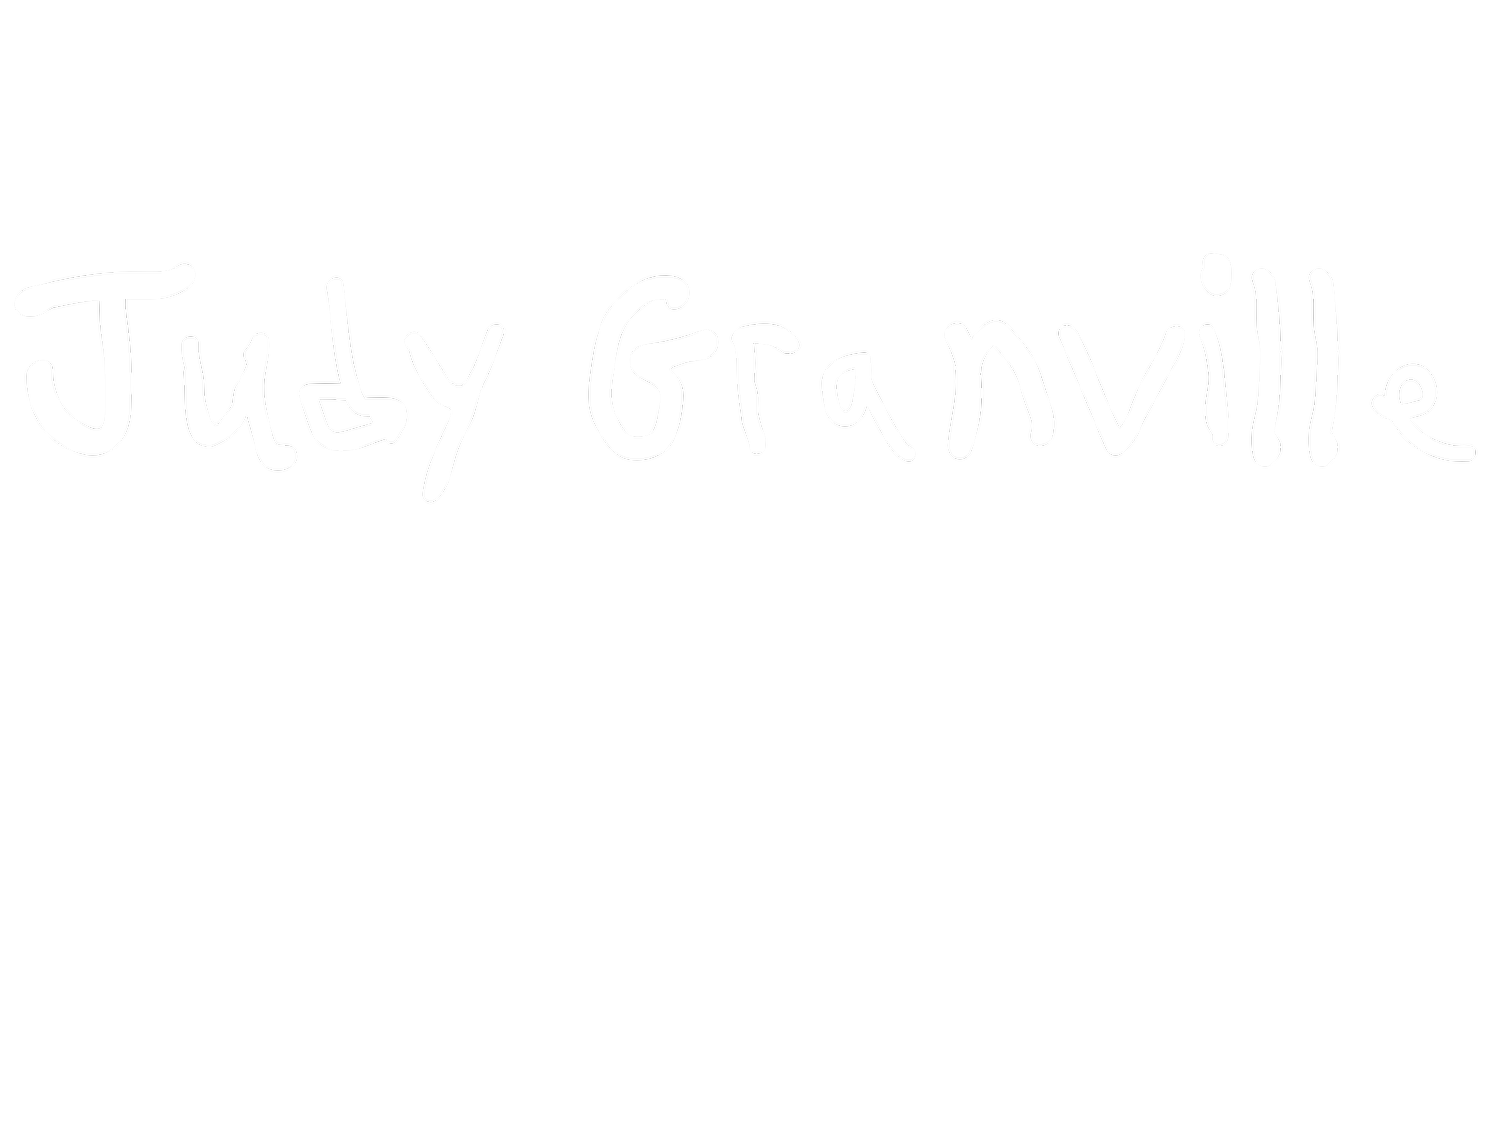 Judy Granville